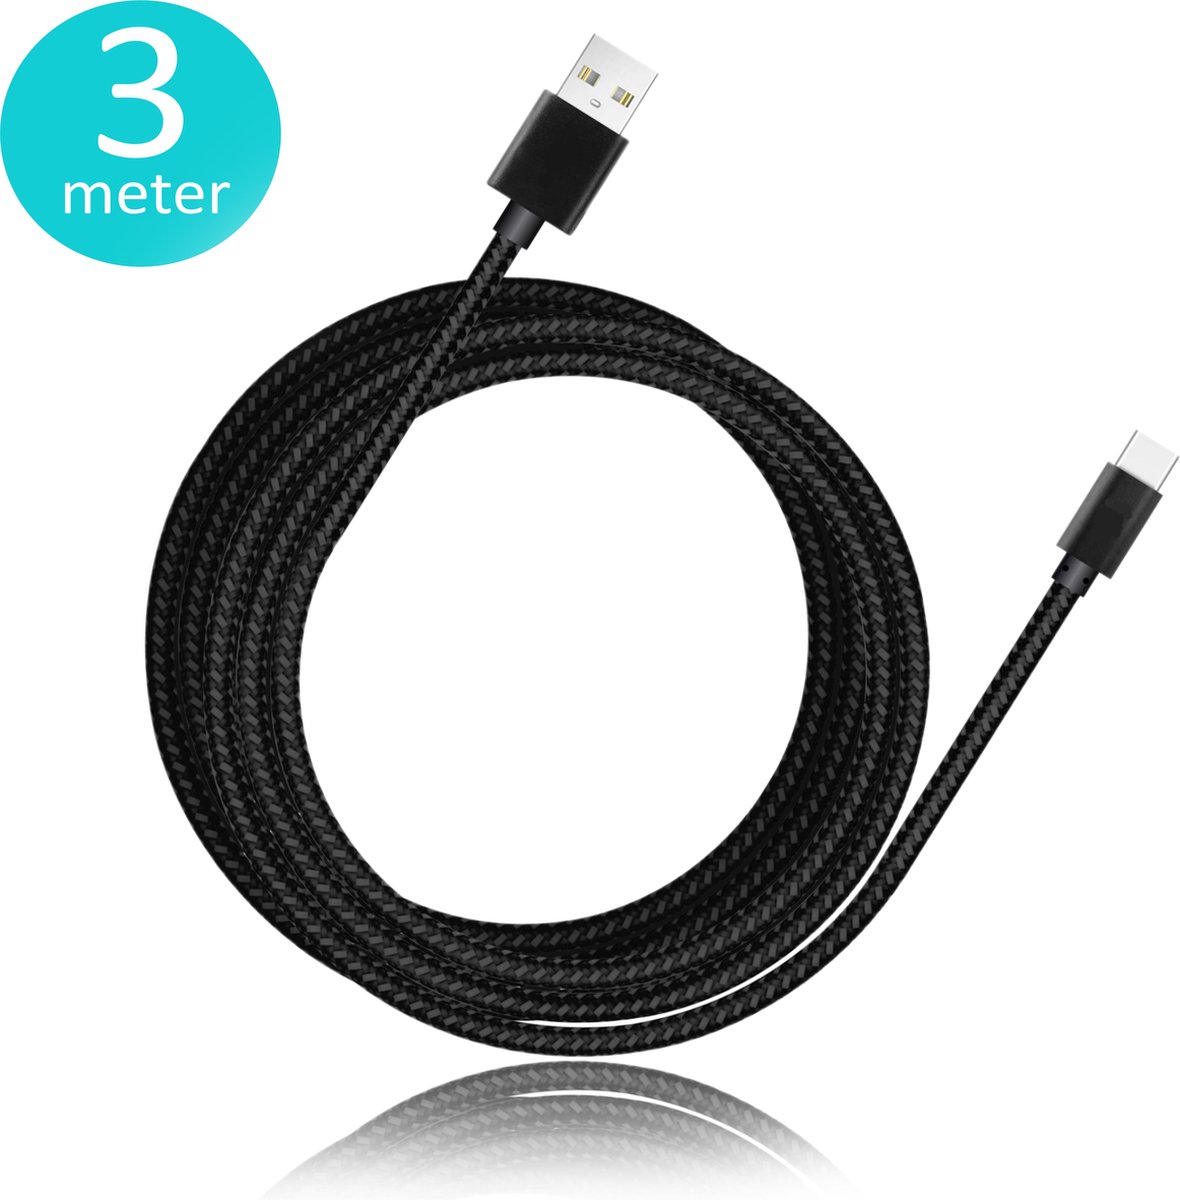 Brightside PS5 oplaadkabel 3 meter | USB C kabel voor PS5 | PS5 accessoires | Nylon gevlochten zwart